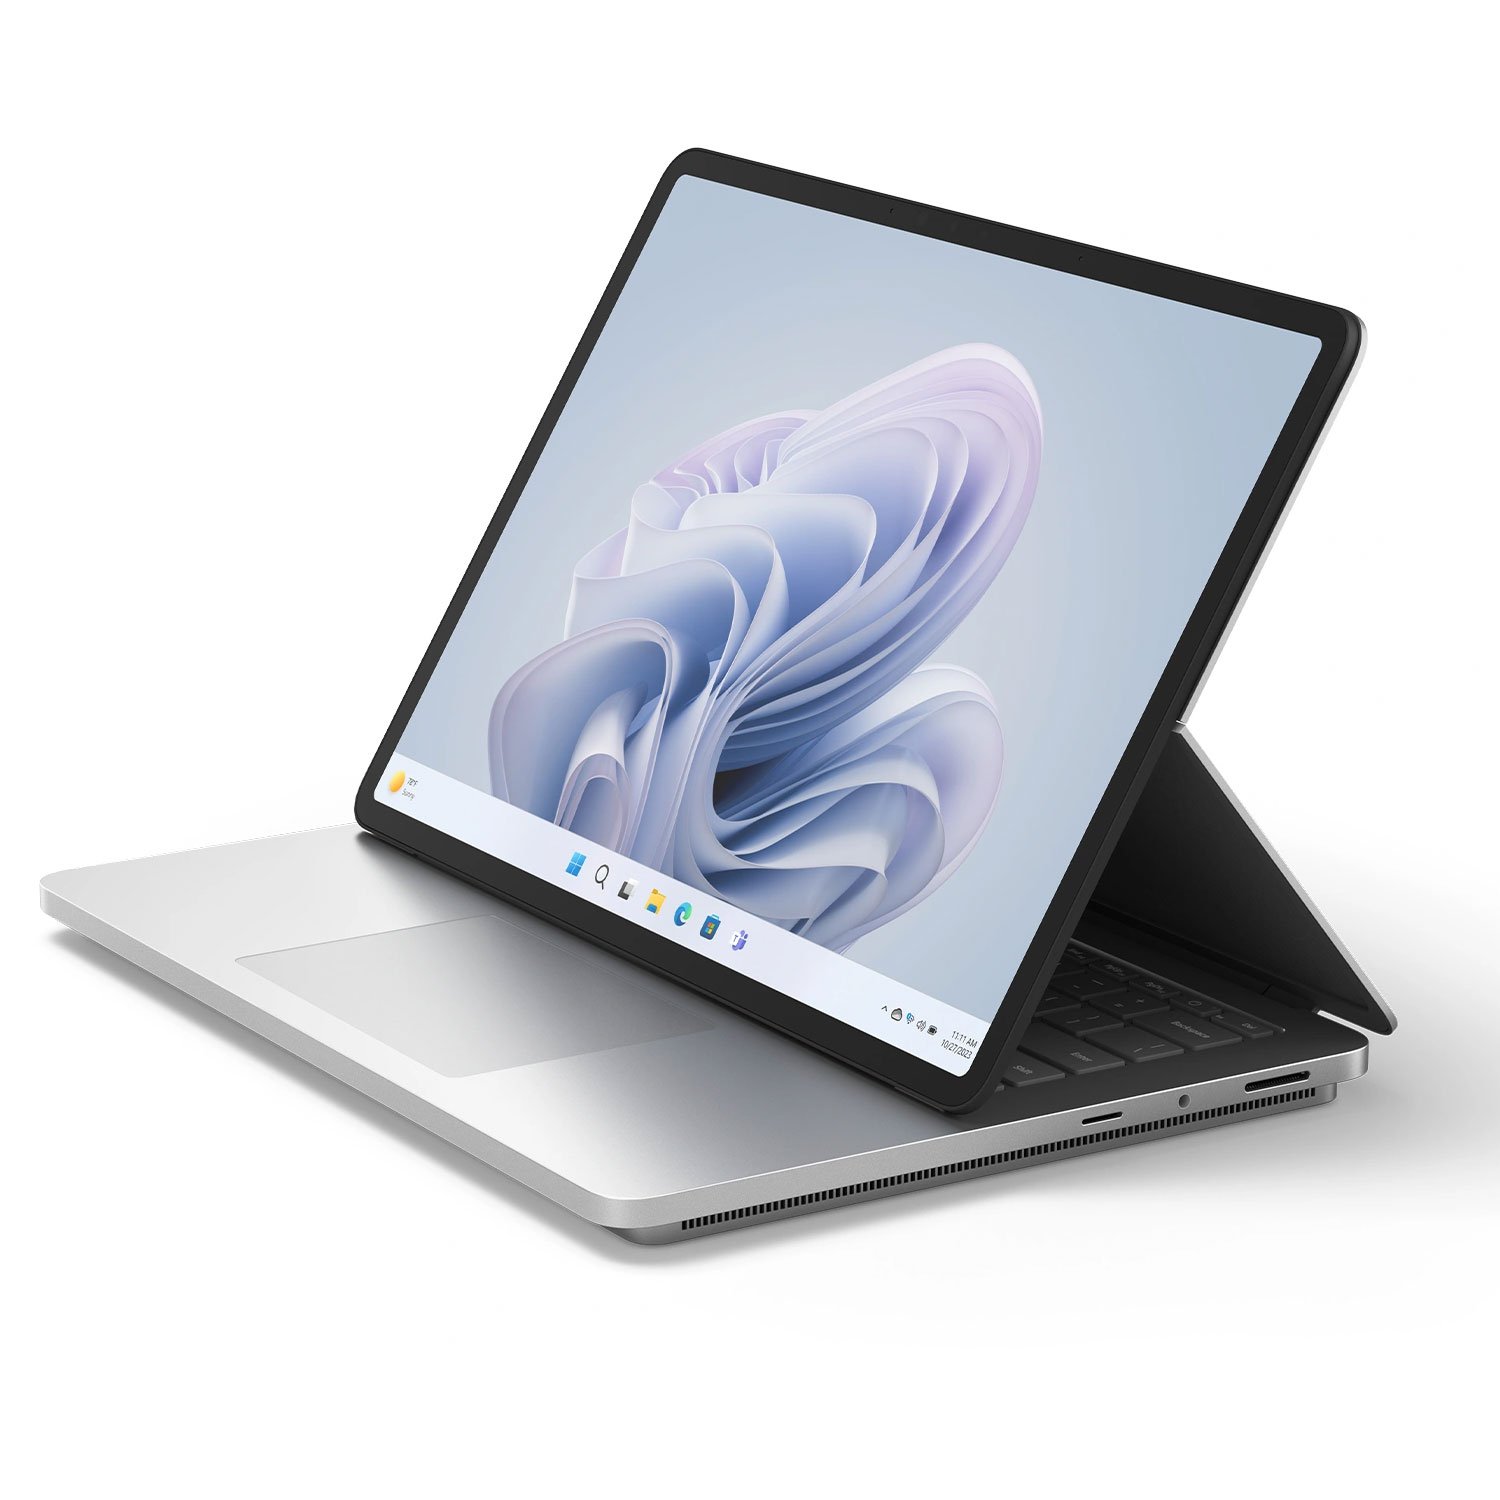 سرفیس لپ تاپ استودیو 2 مایکروسافت 14 اینچ Core i7-32GB-1TB